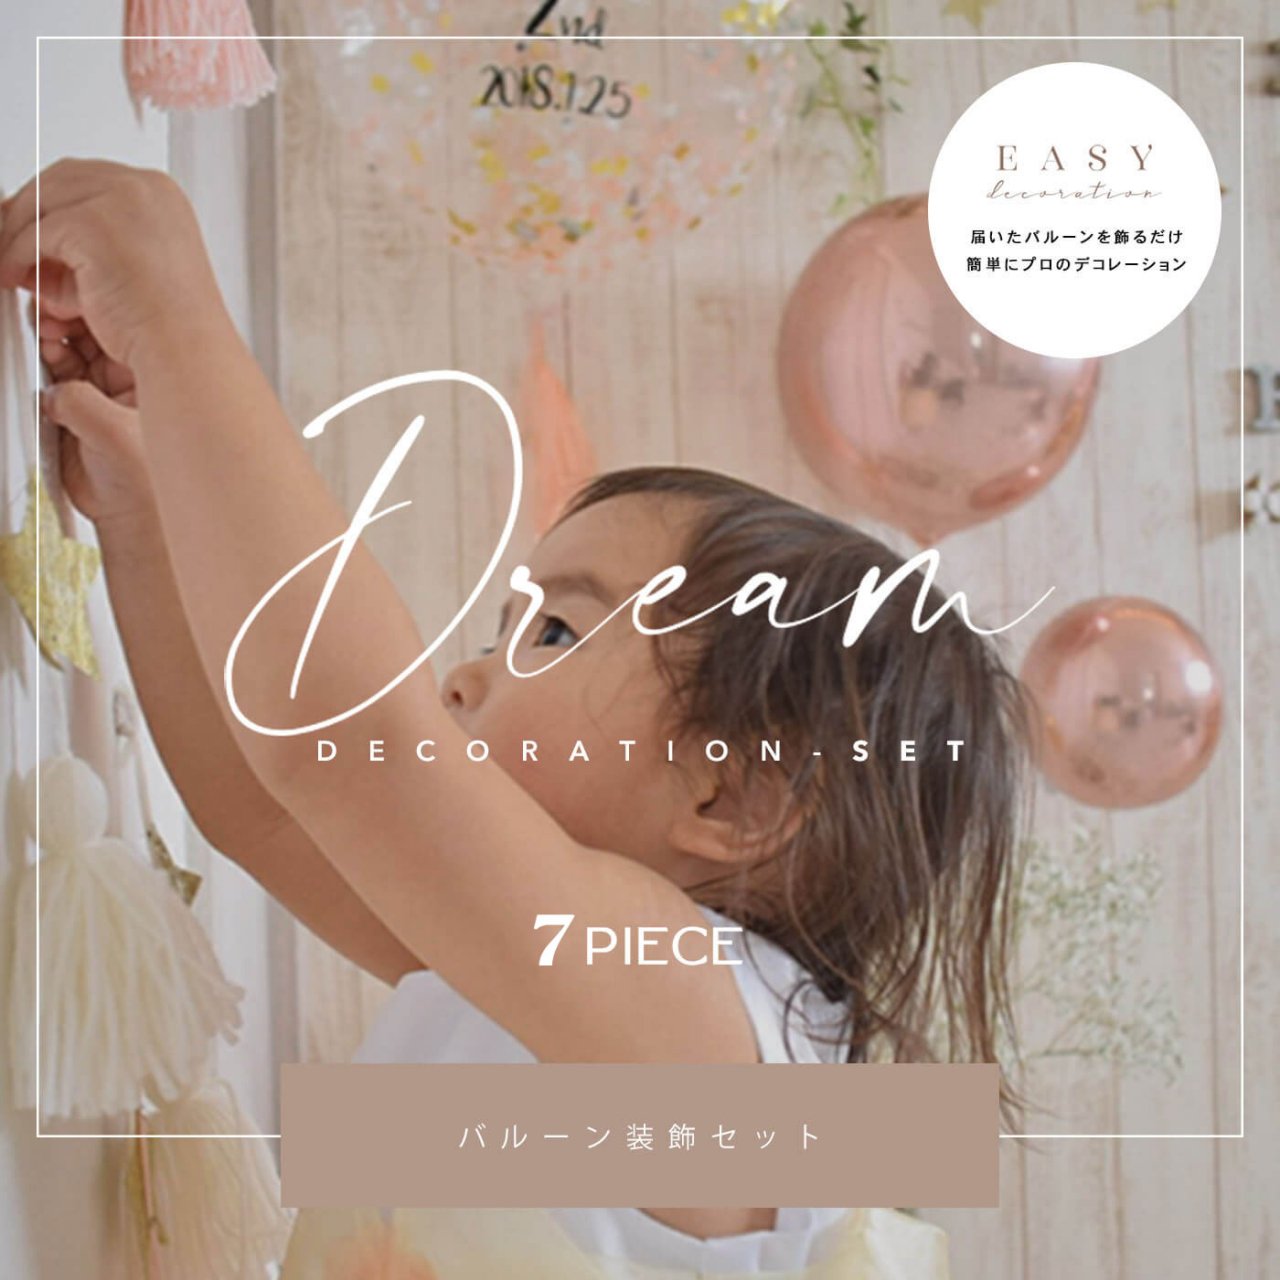 Dream Decoration 7set - Easy Decoration - 届いて飾るだけのイージーデコレーション